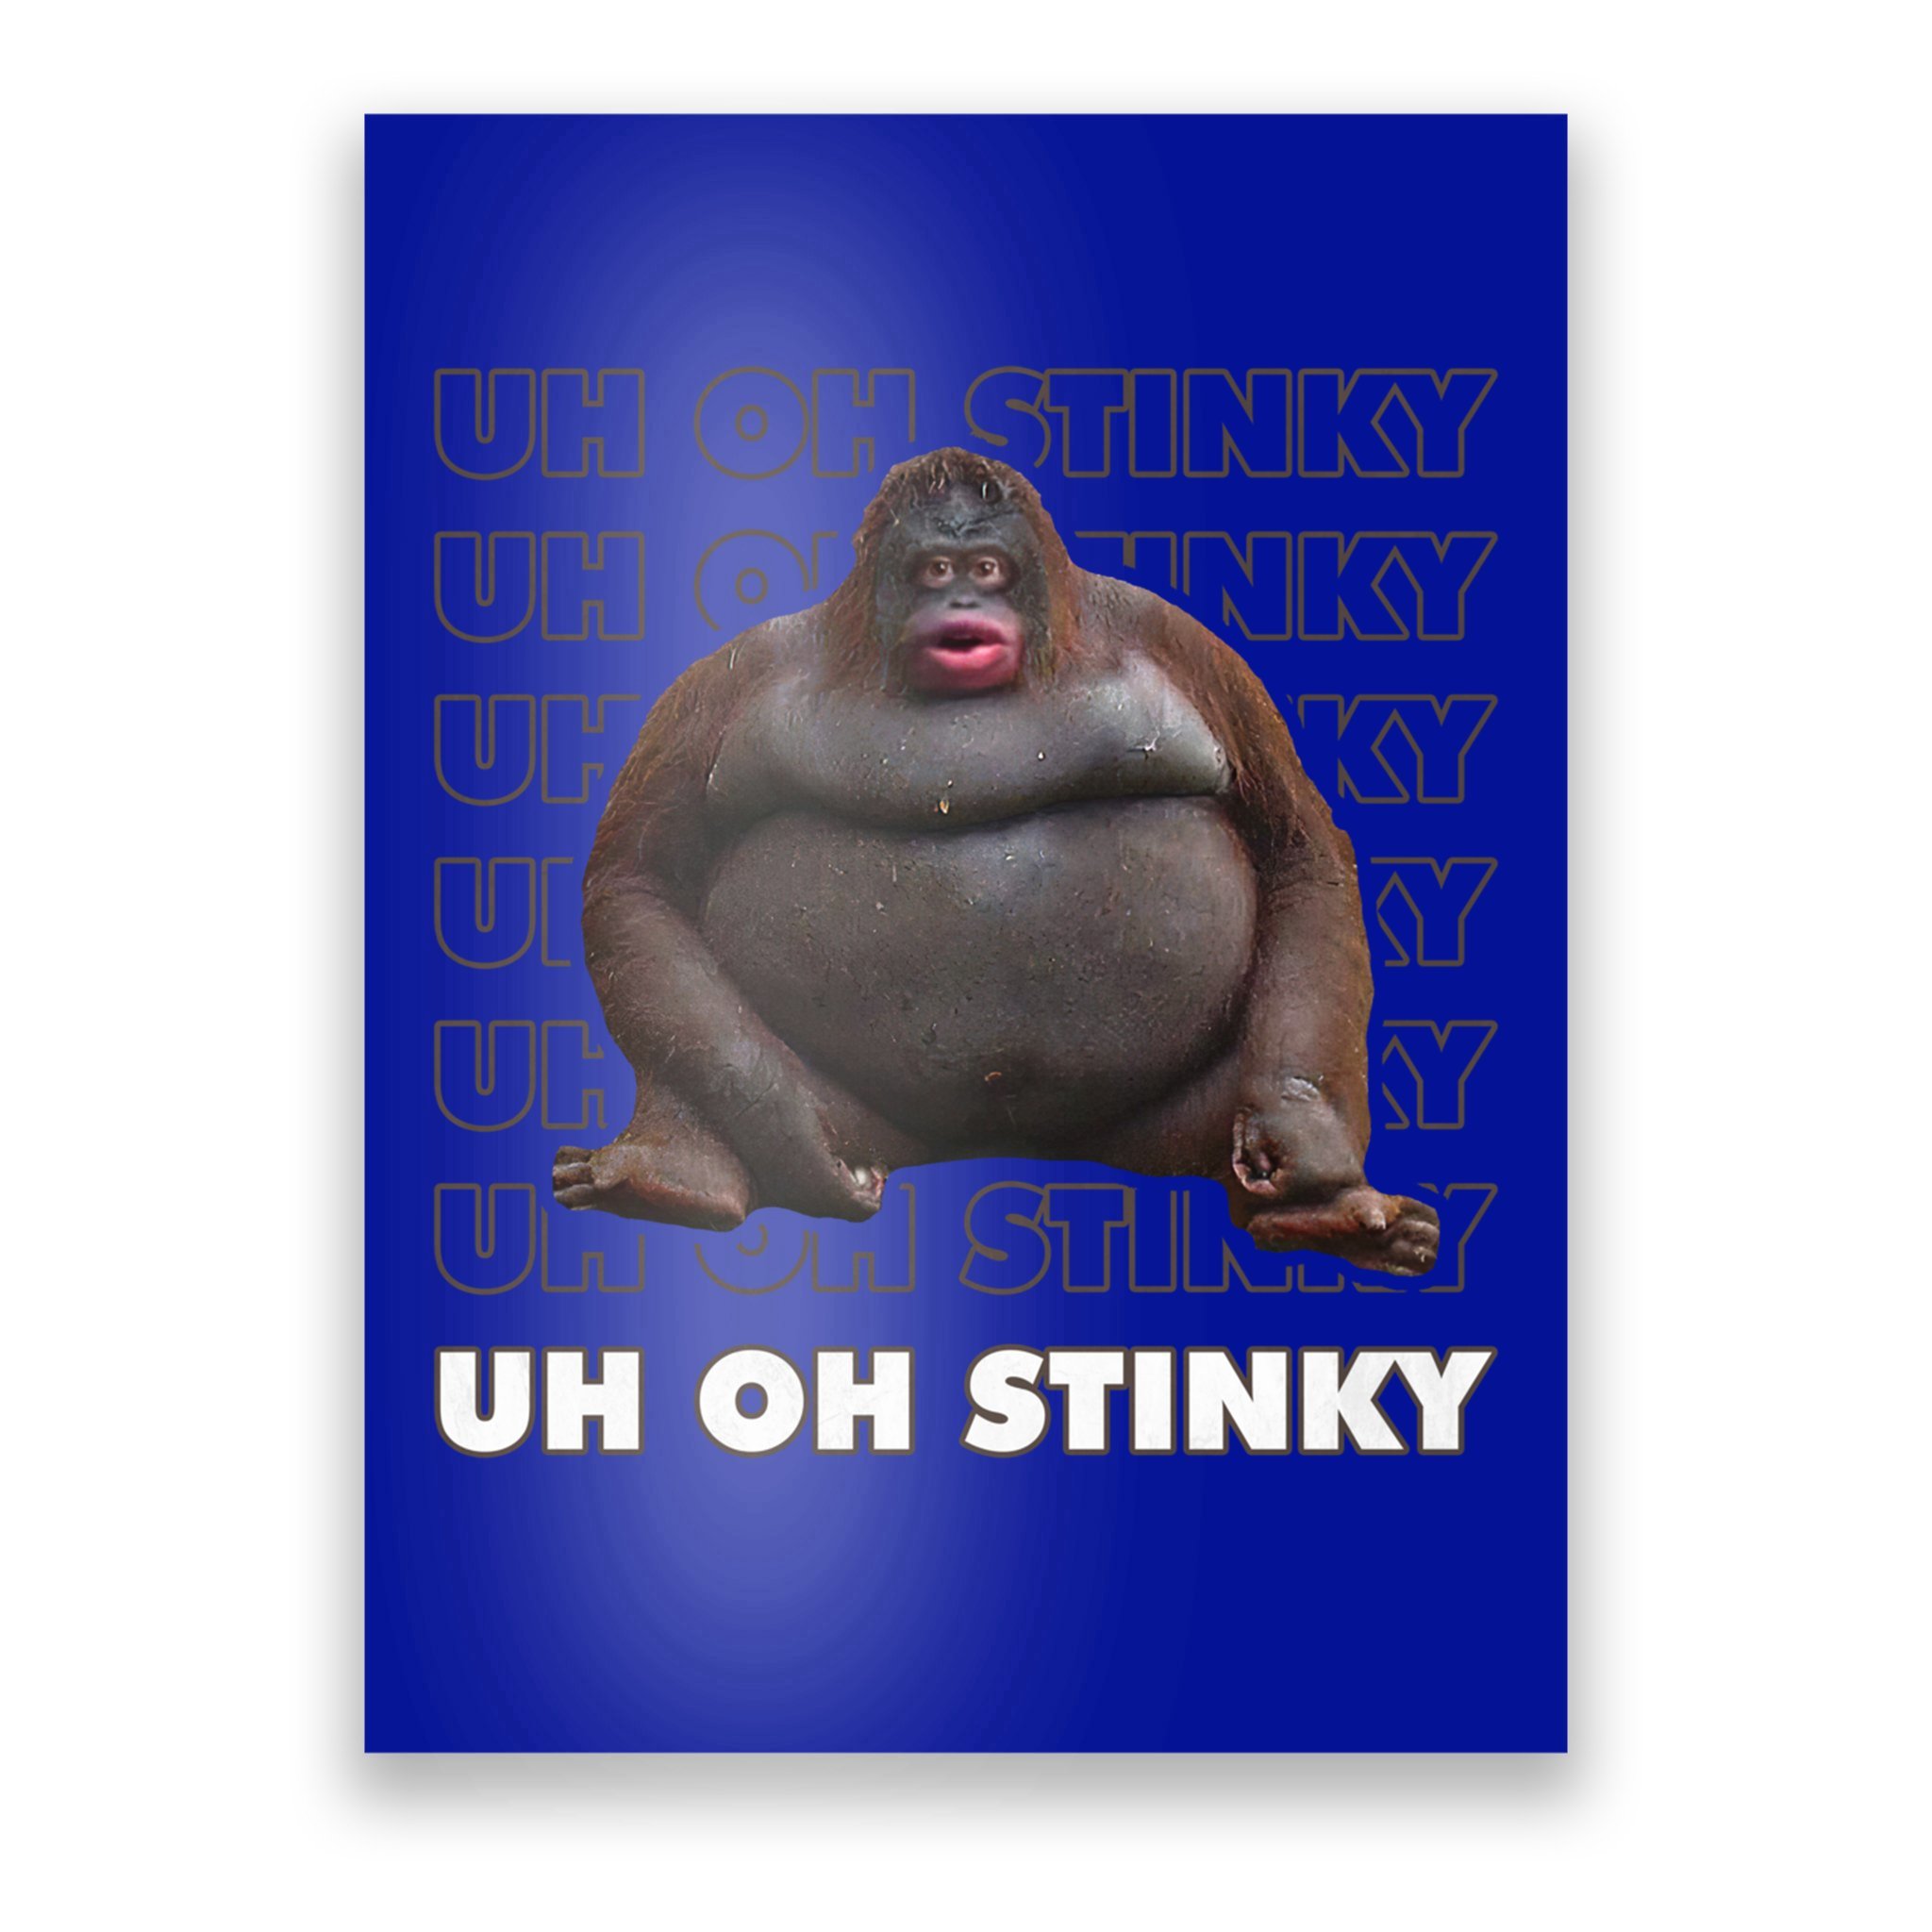 Uh Oh Stinky Poop Le Monke Meme Digital Art by Jamaaf Tasne - Pixels